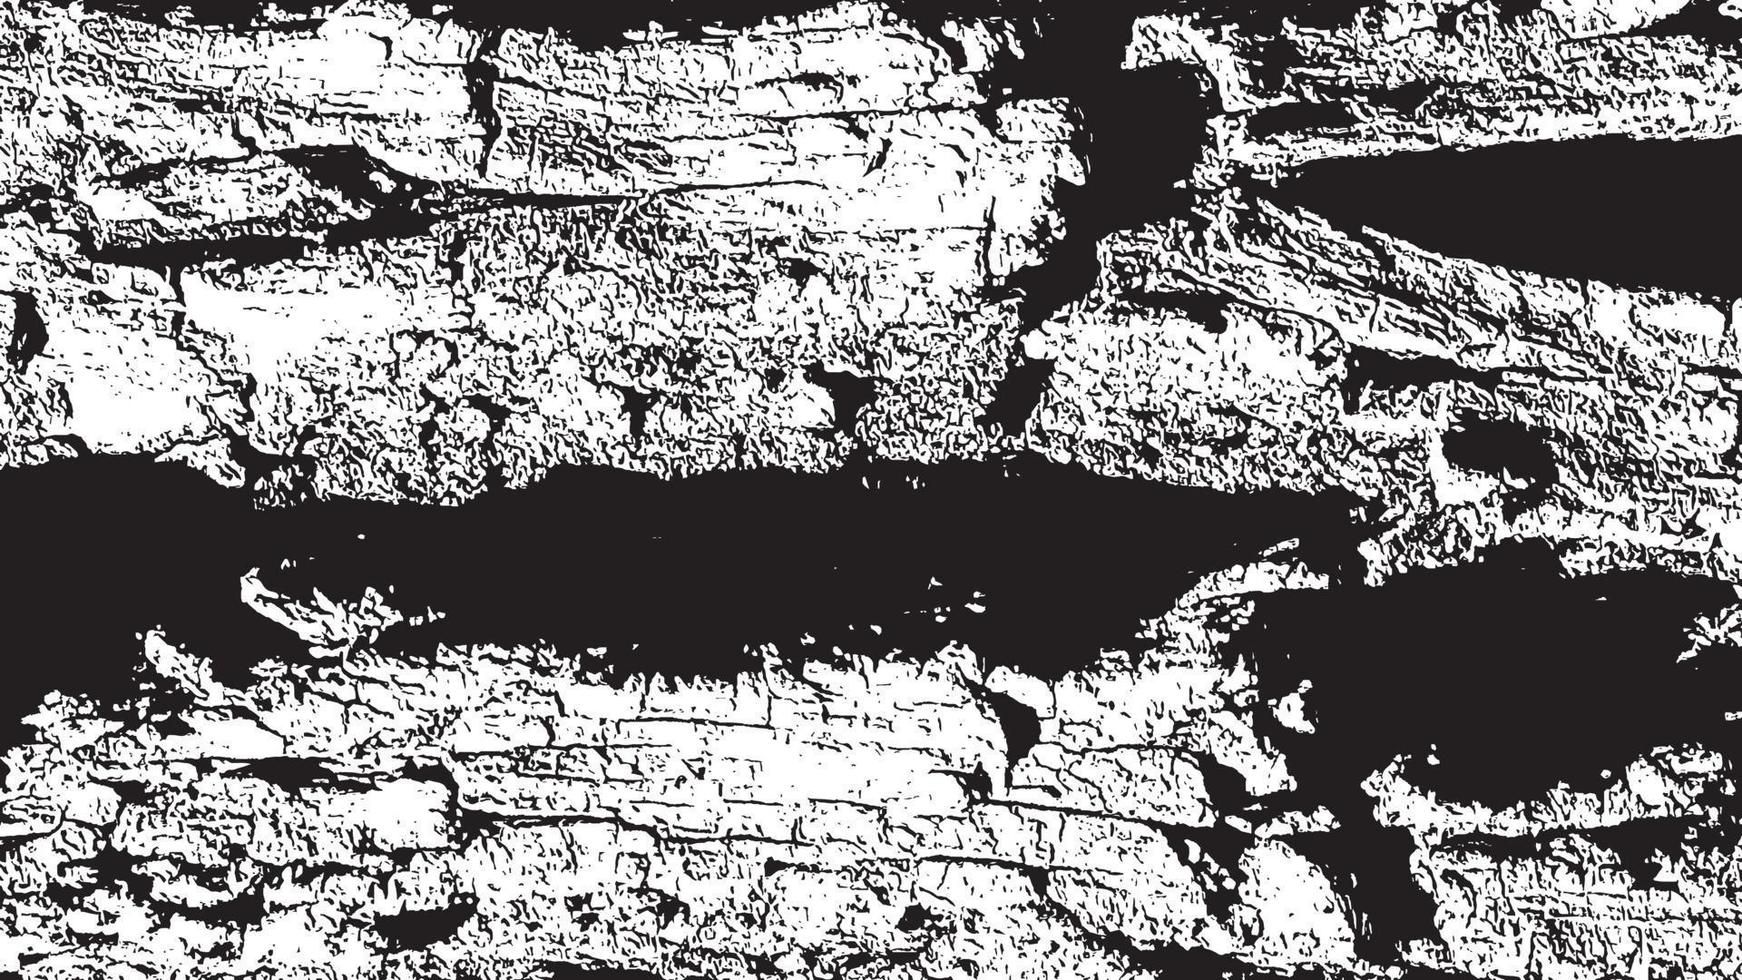 textura de superposición envejecida, fondo de grunge abstracto en blanco y negro, suciedad vectorial envejecida, textura de astillas, grietas, rasguños, desgastes, polvo, suciedad. vector